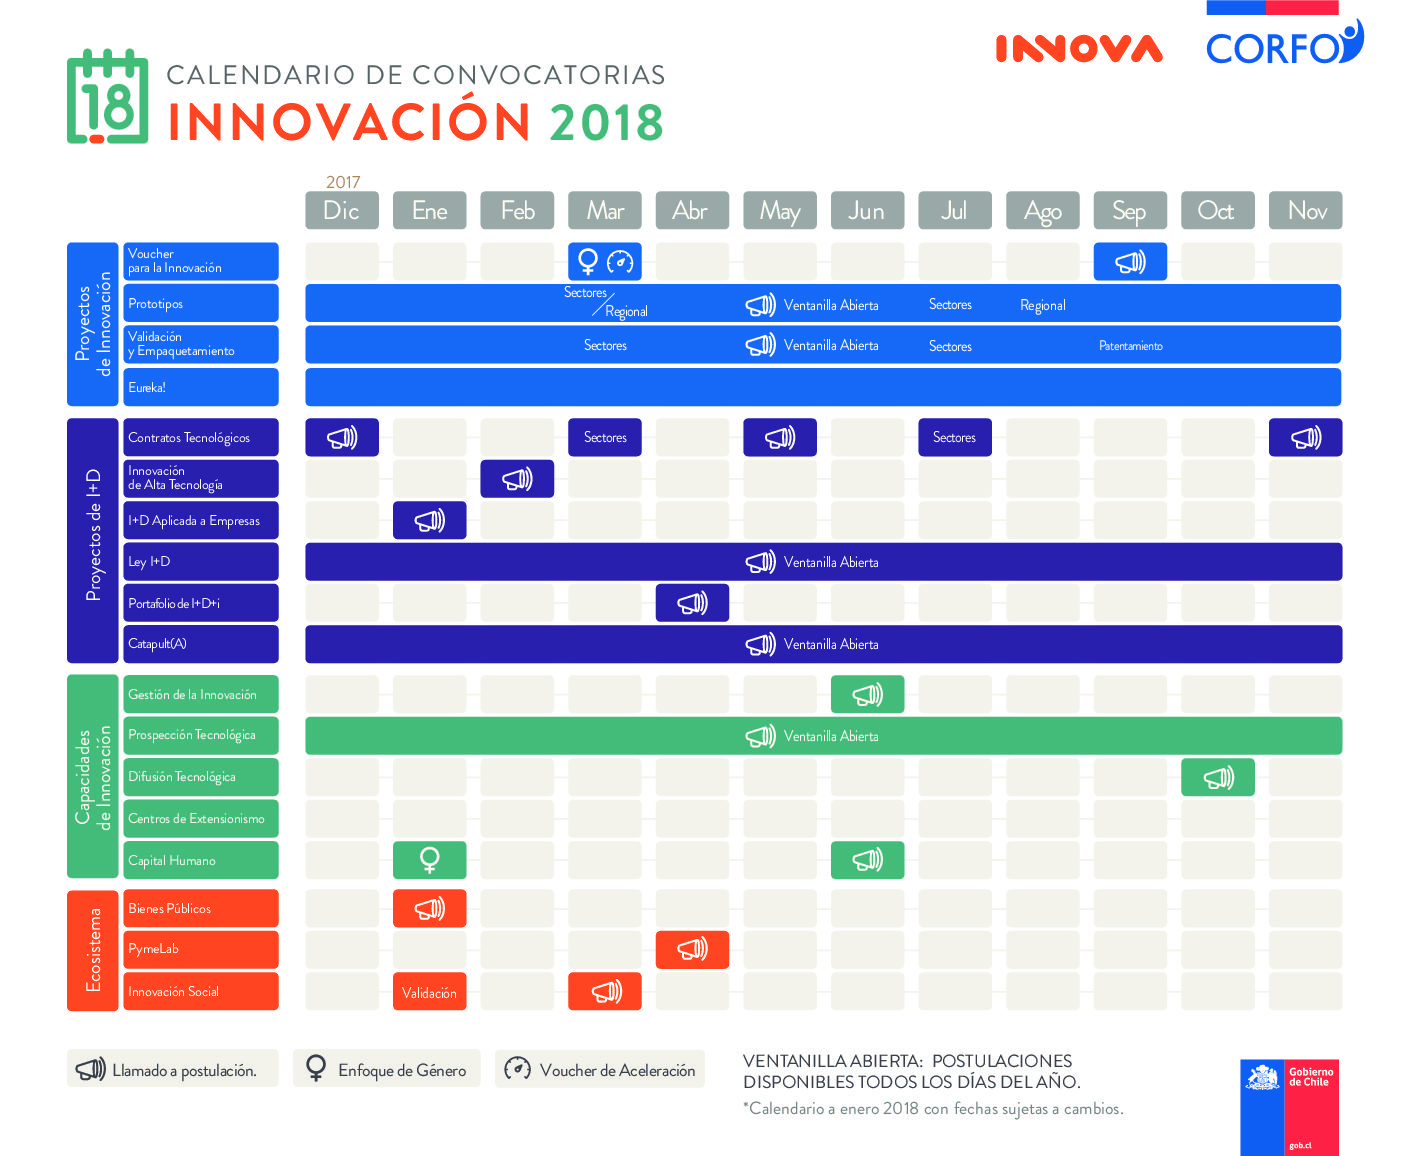 Descarga el calendario de Convocatorias de la gerencia de Innovación 2018 de #Corfo y prepárate para postular